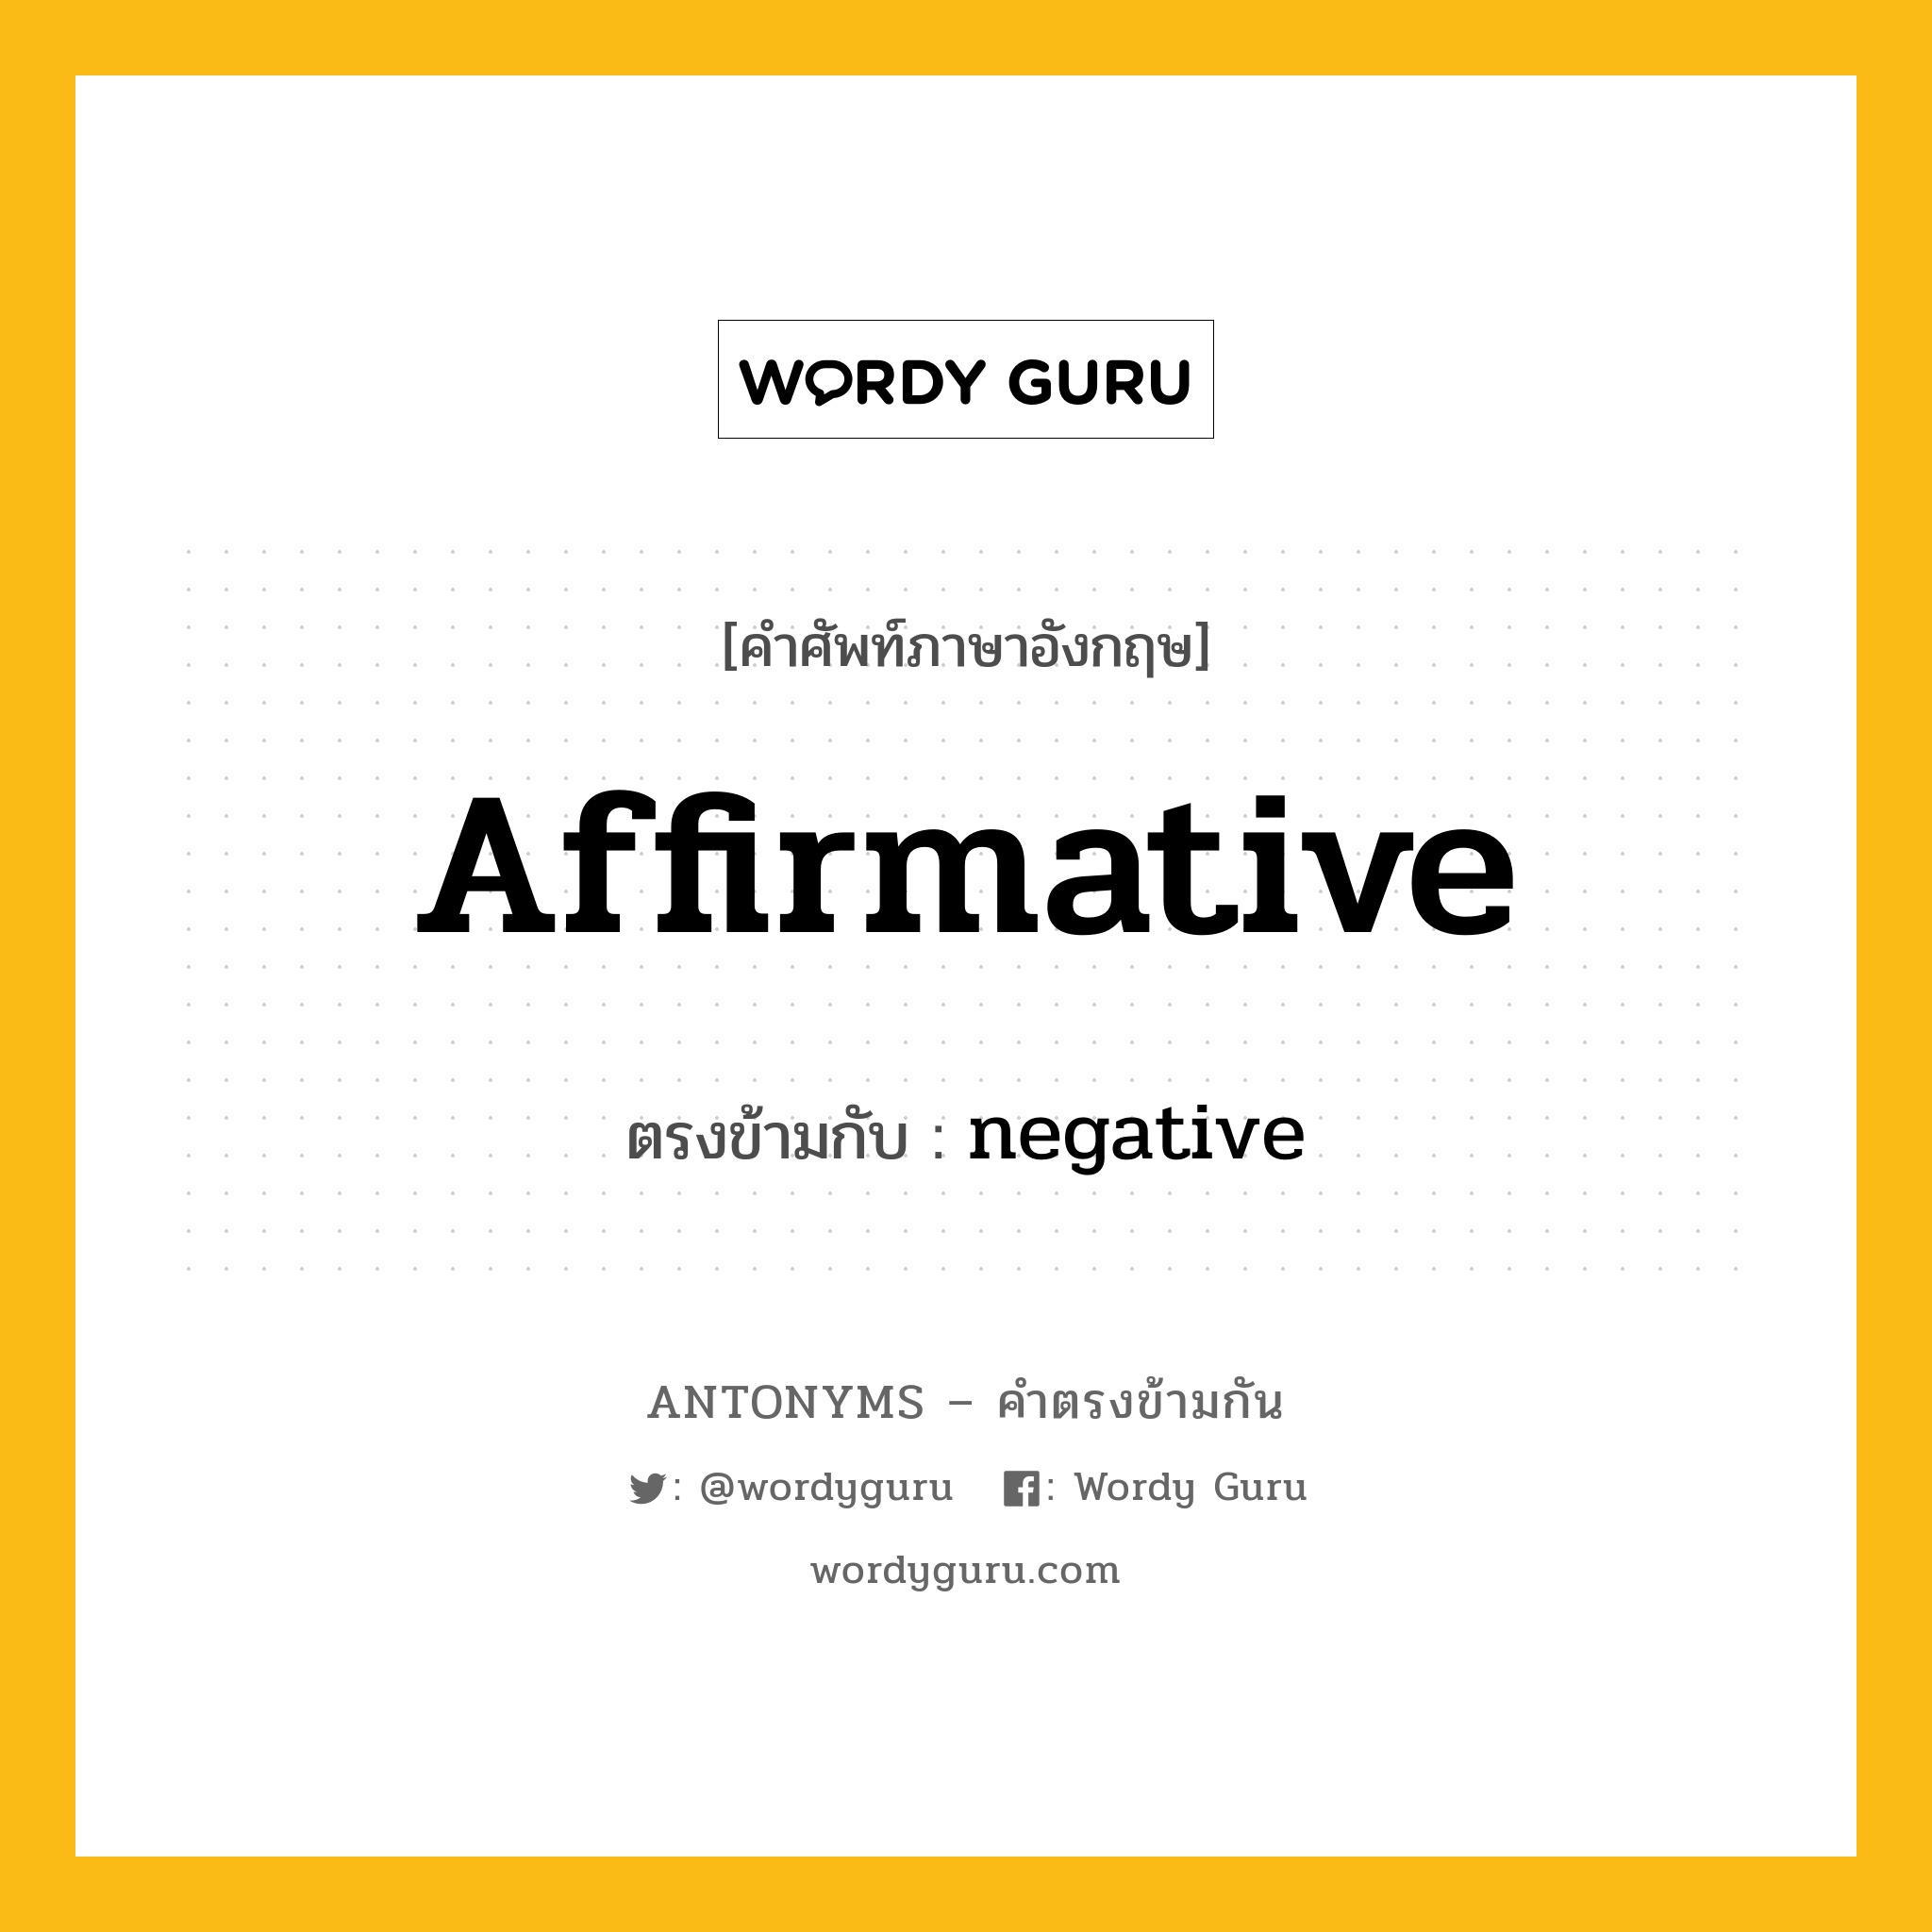 affirmative เป็นคำตรงข้ามกับคำไหนบ้าง?, คำศัพท์ภาษาอังกฤษ affirmative ตรงข้ามกับ negative หมวด negative